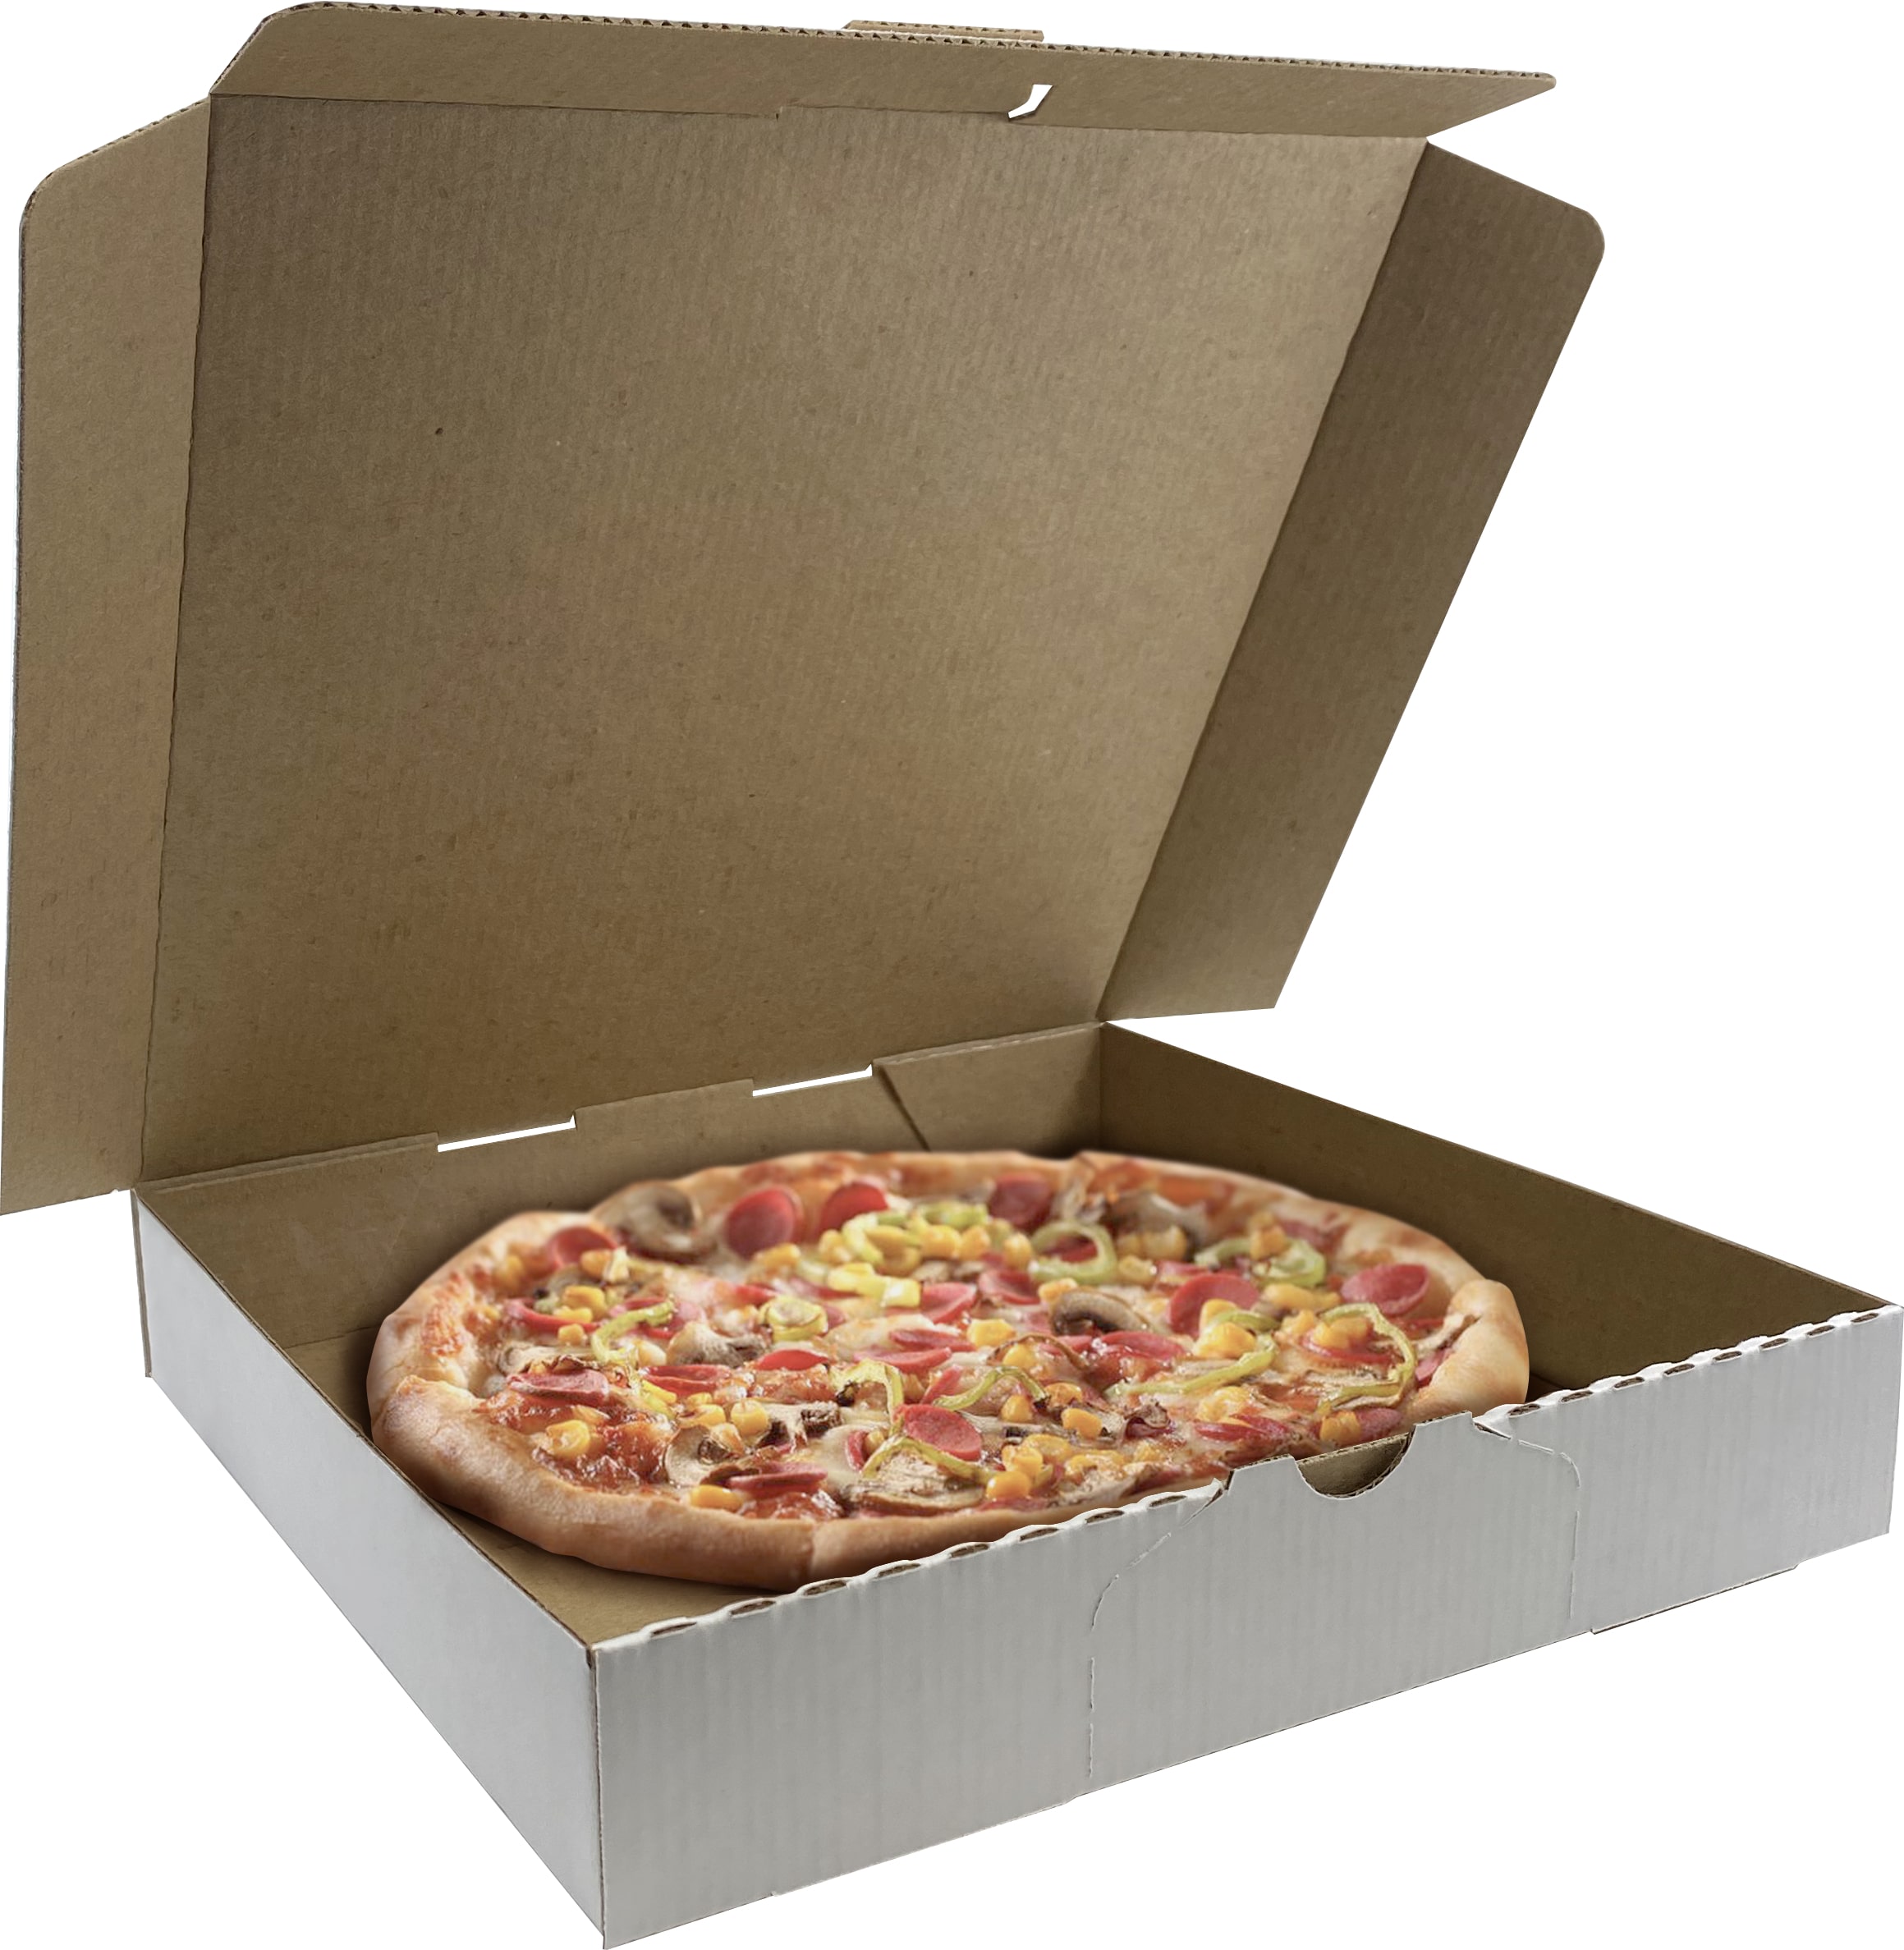 PLATO PARA PIZZA - Cajas de pizza